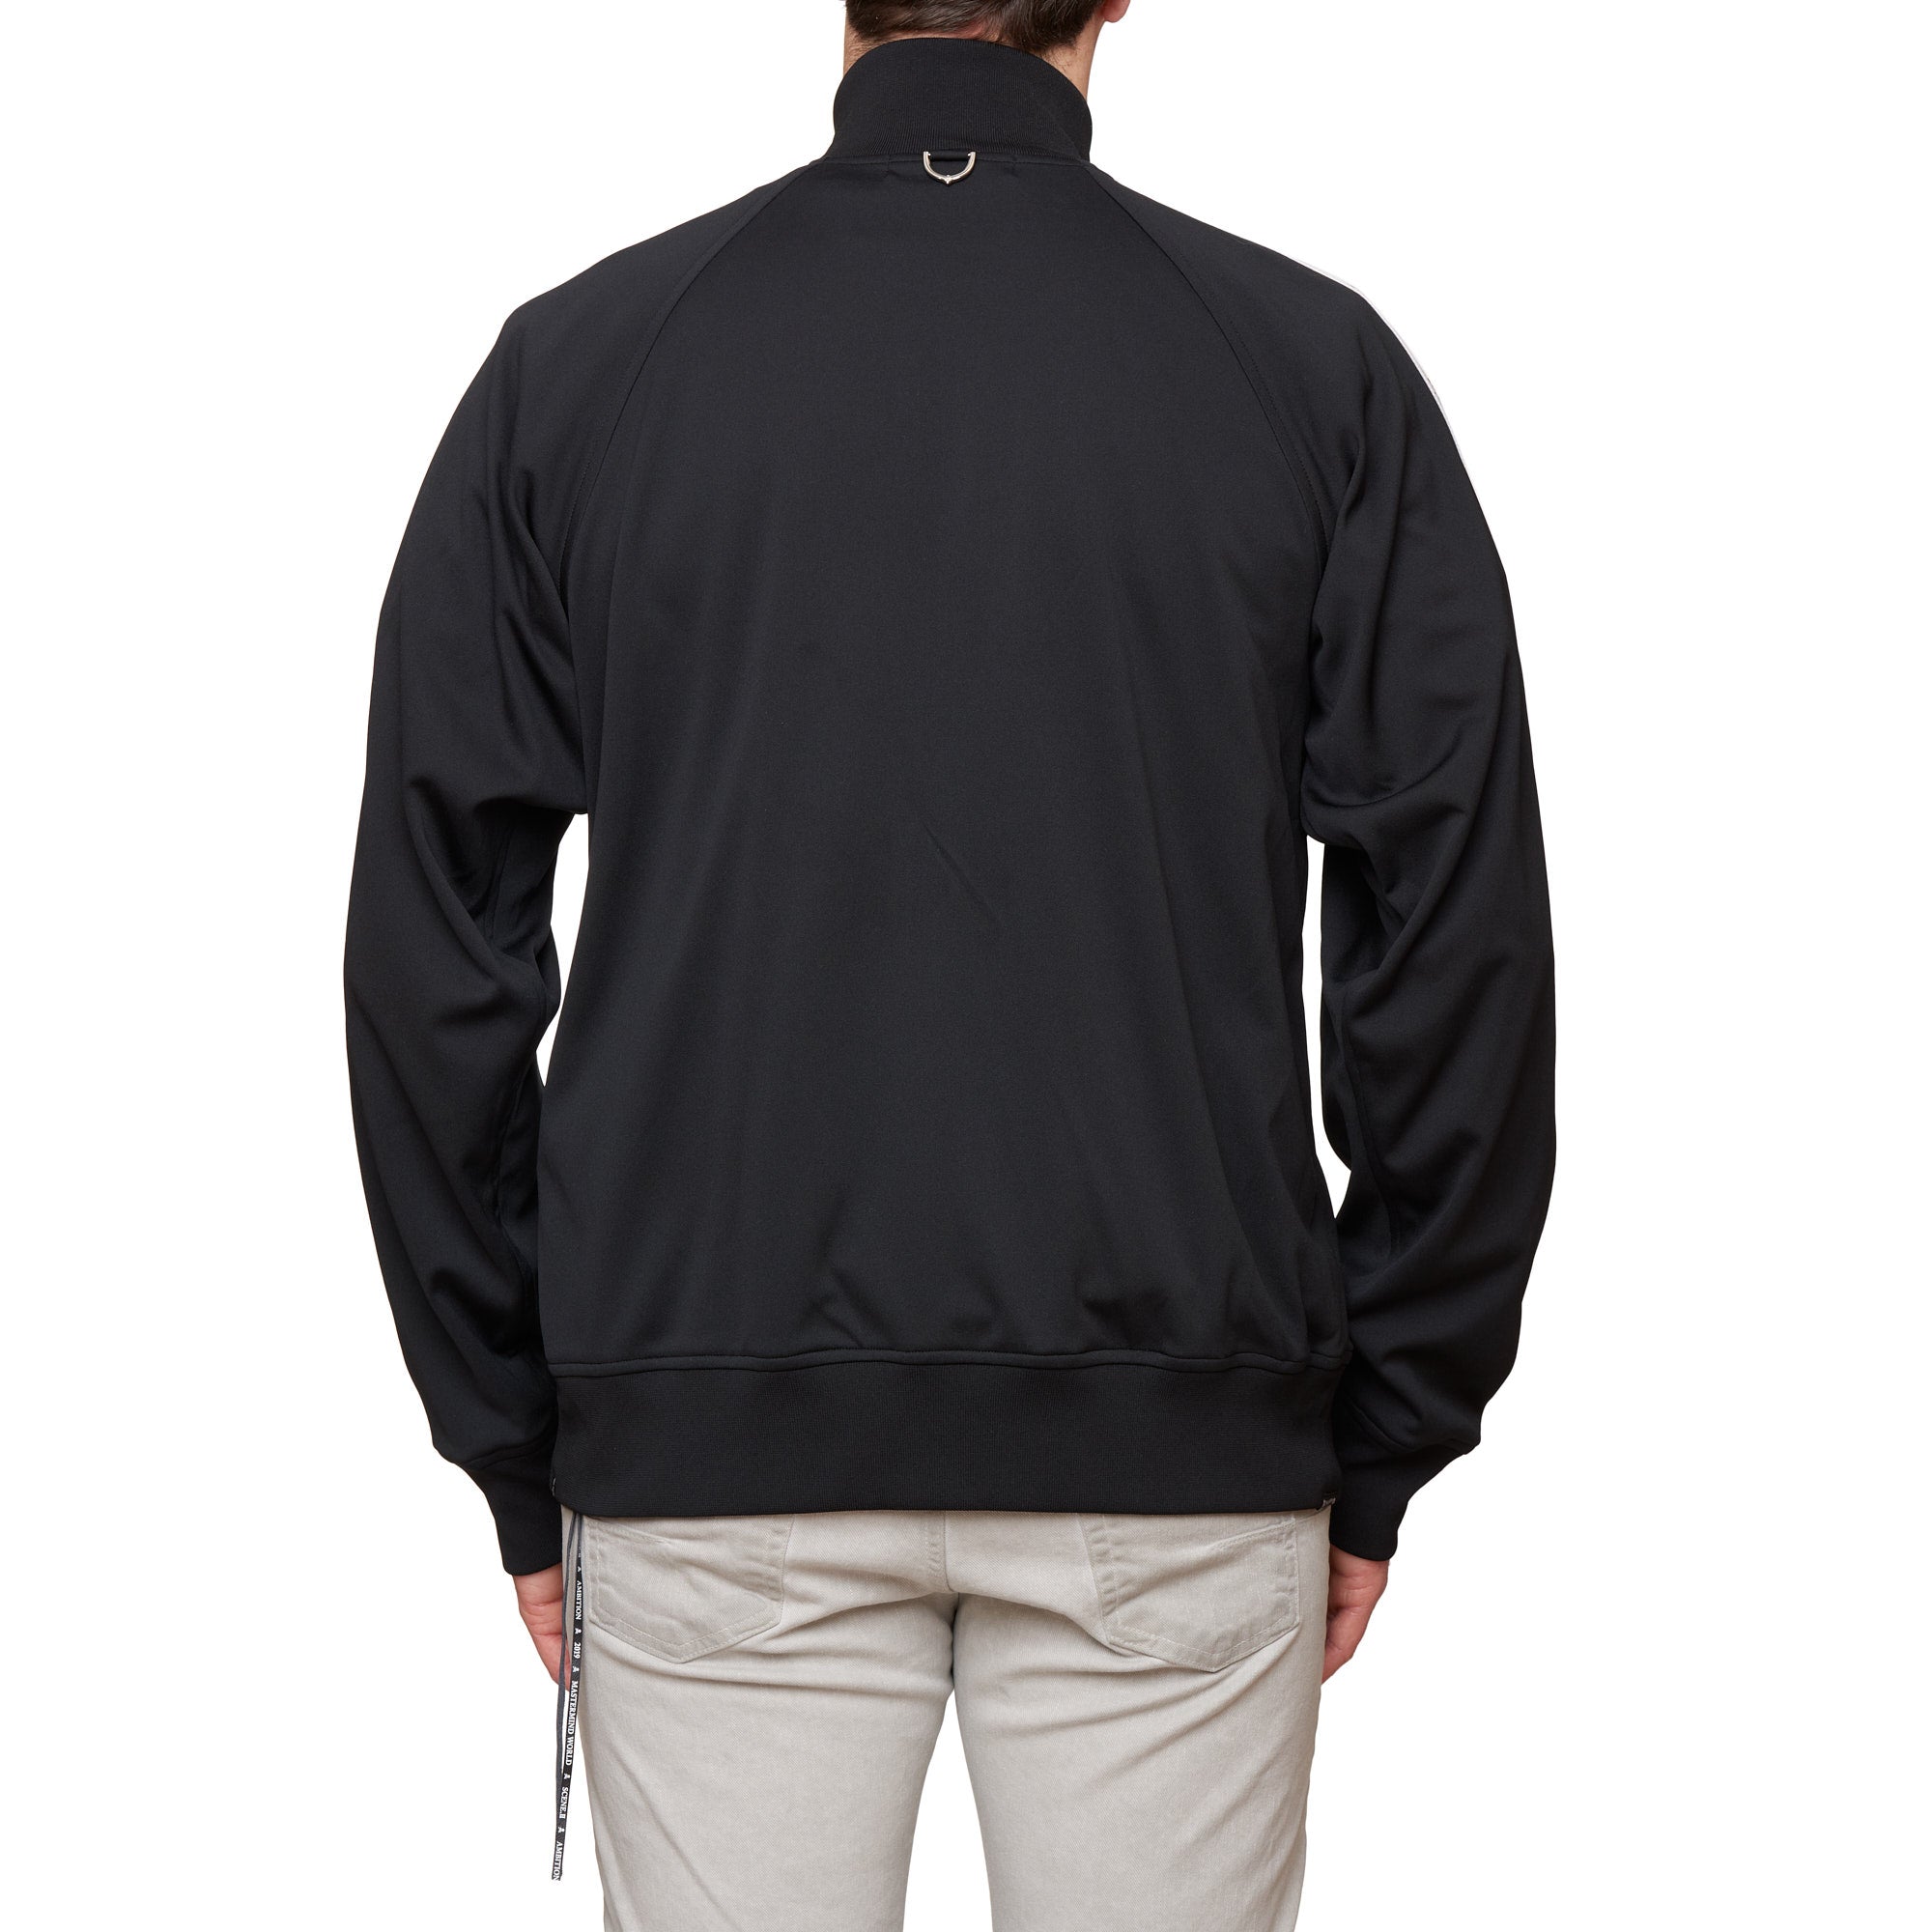 MASTERMIND WORLD Black Taped Track Jacket Full Zip Cardigan Coat NEW Size XL MASTERMIND WORLD